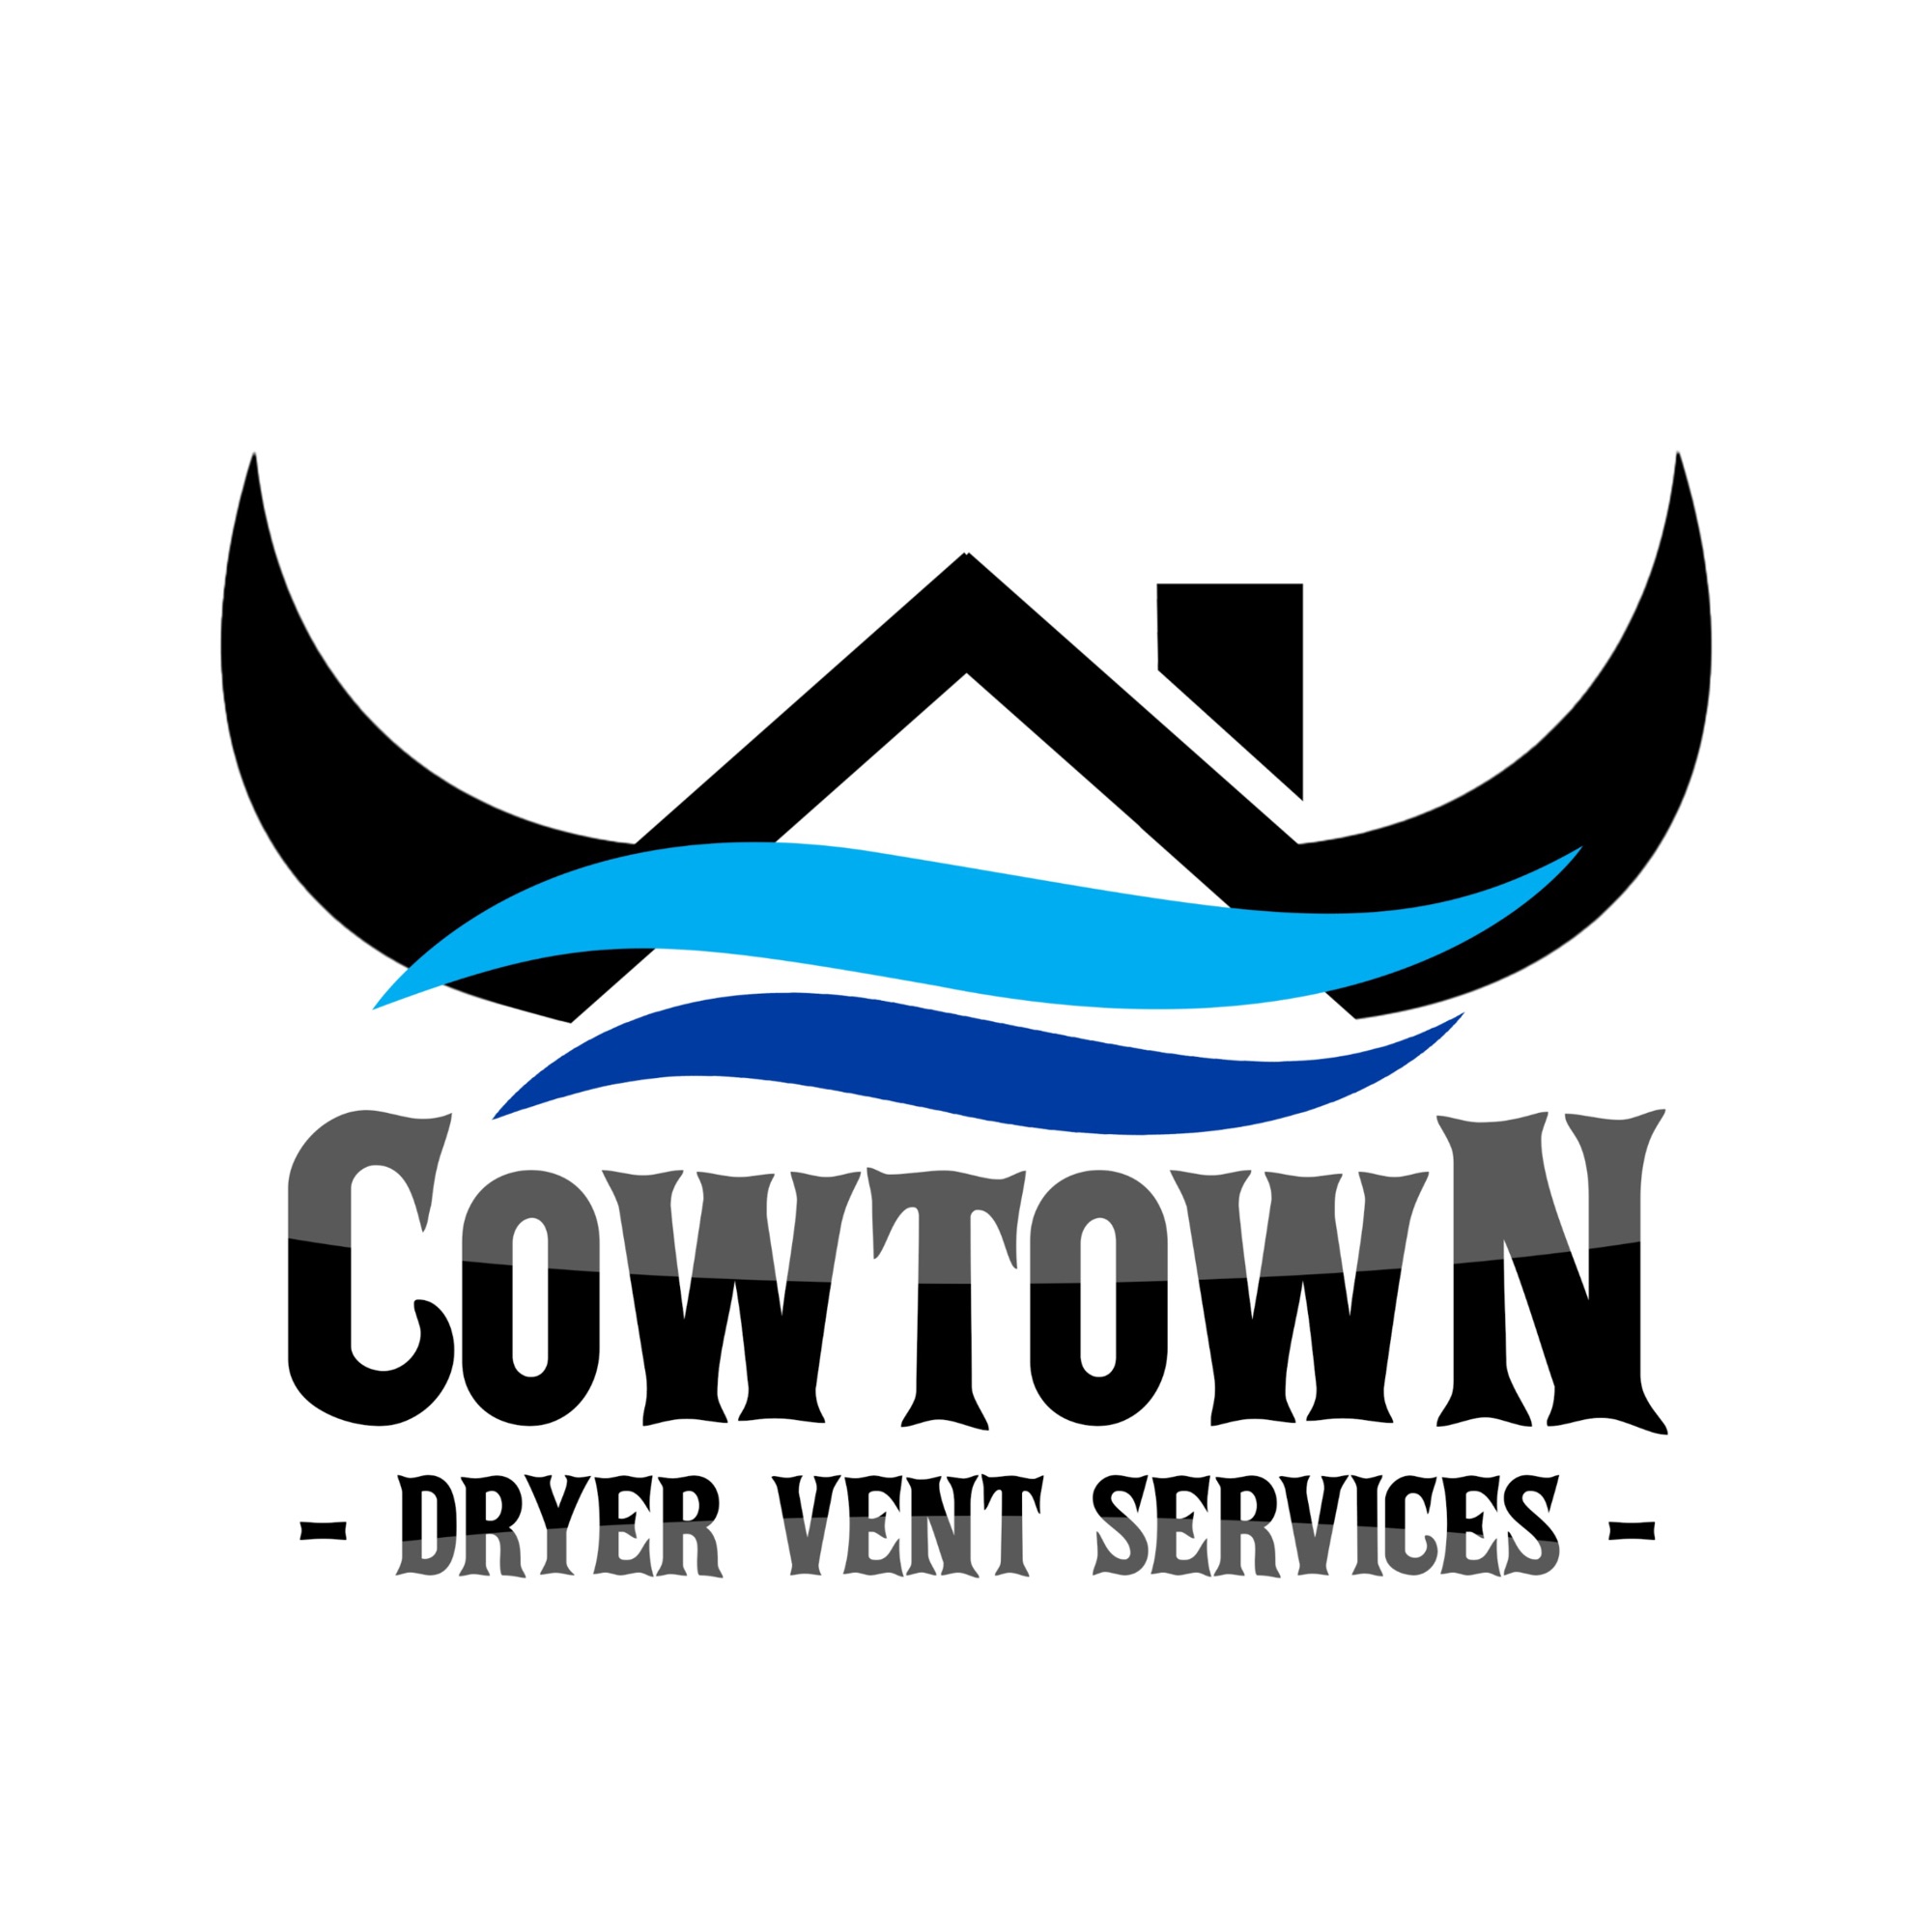 Cowtown Dryer Vent Services Logo